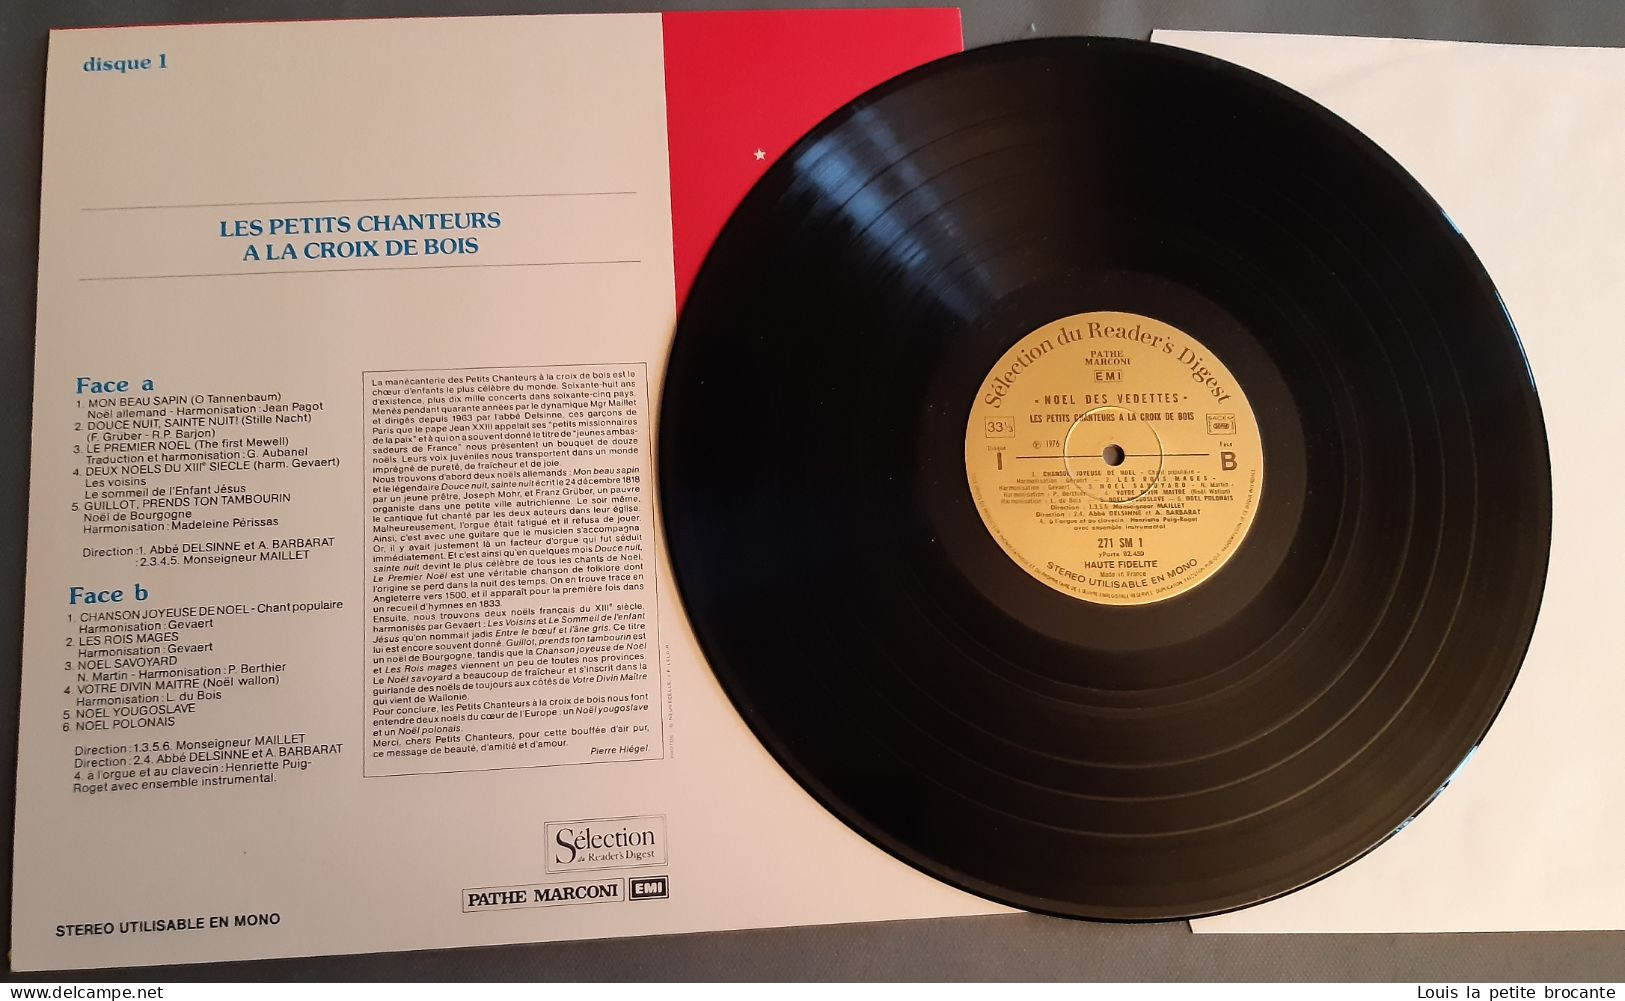 Coffret de 4 disques vinyles "Noël des Vedettes", 33 tours stéréo. PATHE MARCONI, EMI, Sélection du Reader's Digest 1974